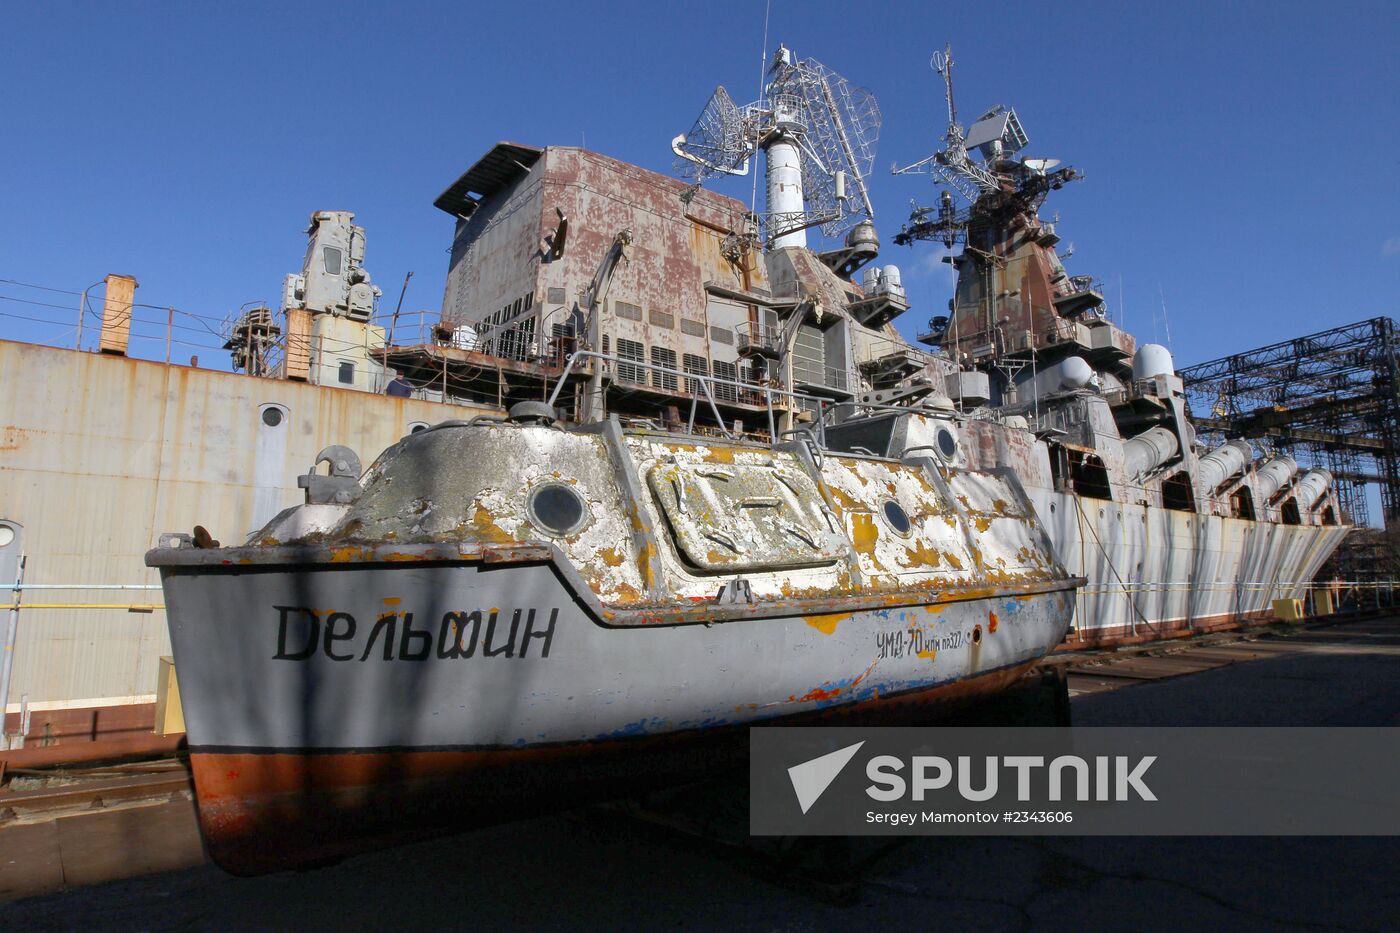 Missile cruiser Ukraine at the Nikolayev Shipbuilding Yard in Ukraine